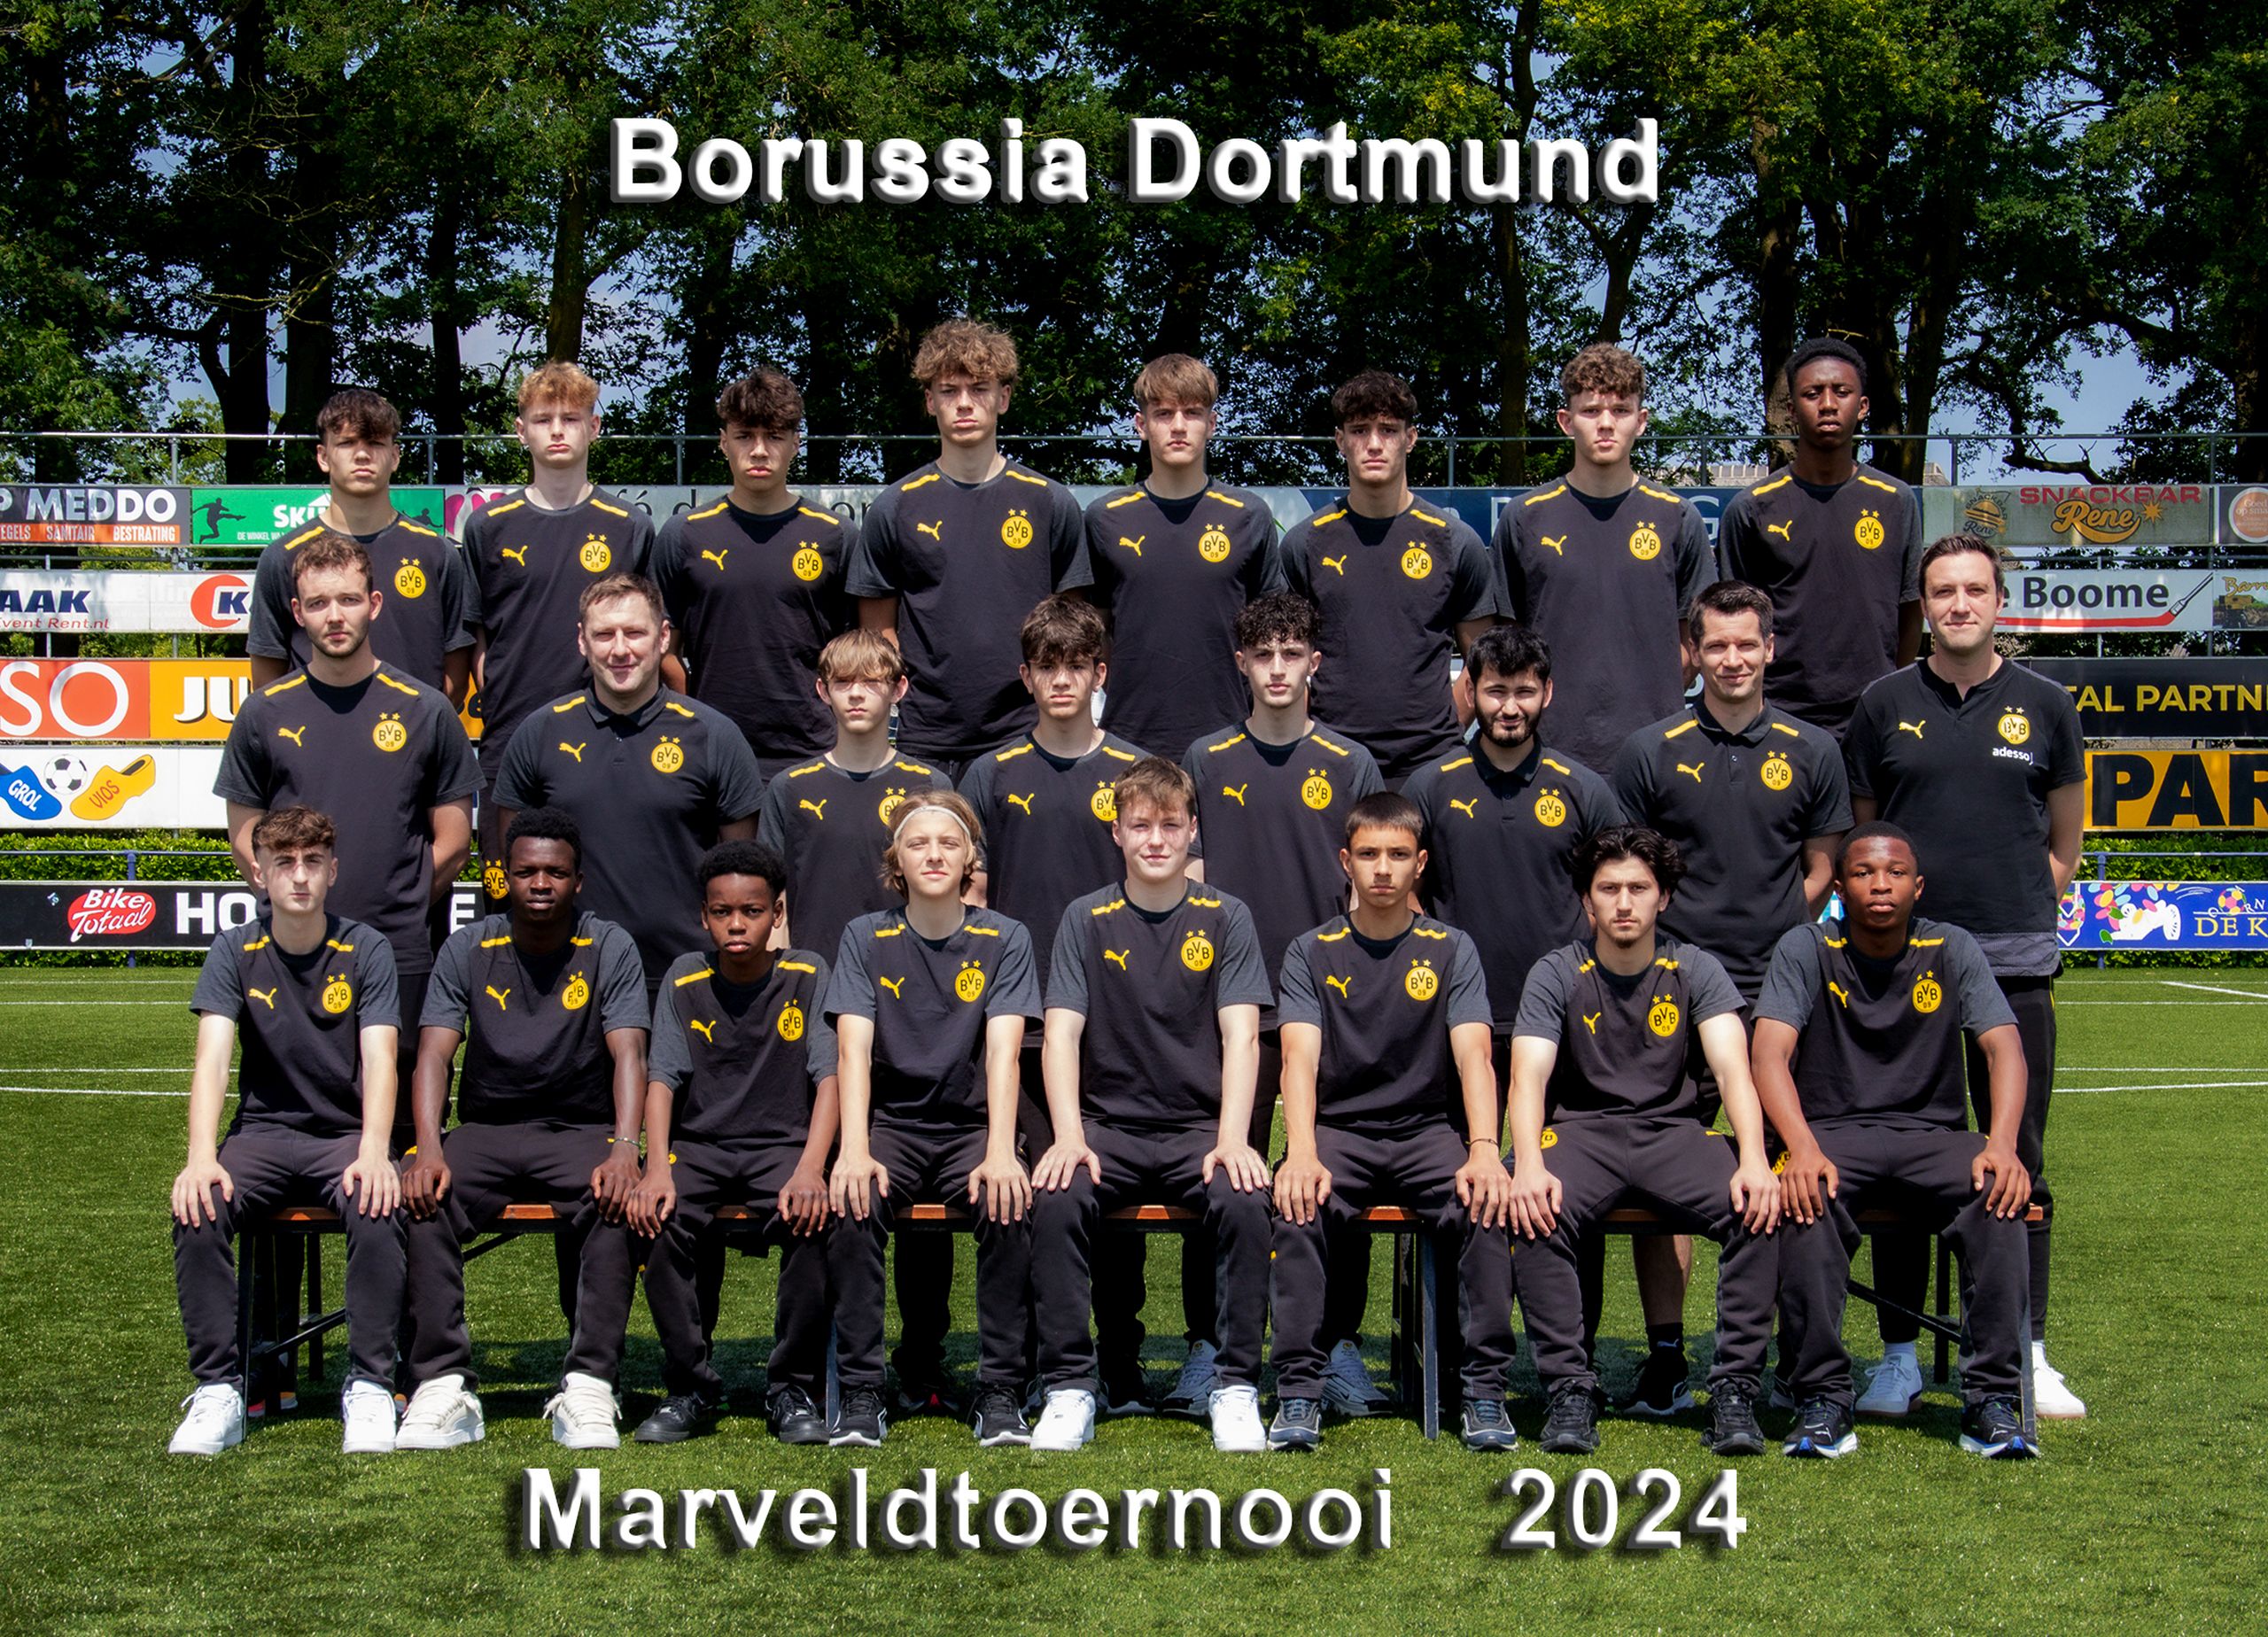 Marveld Tournament 2024 - Team Borussia Dortmund